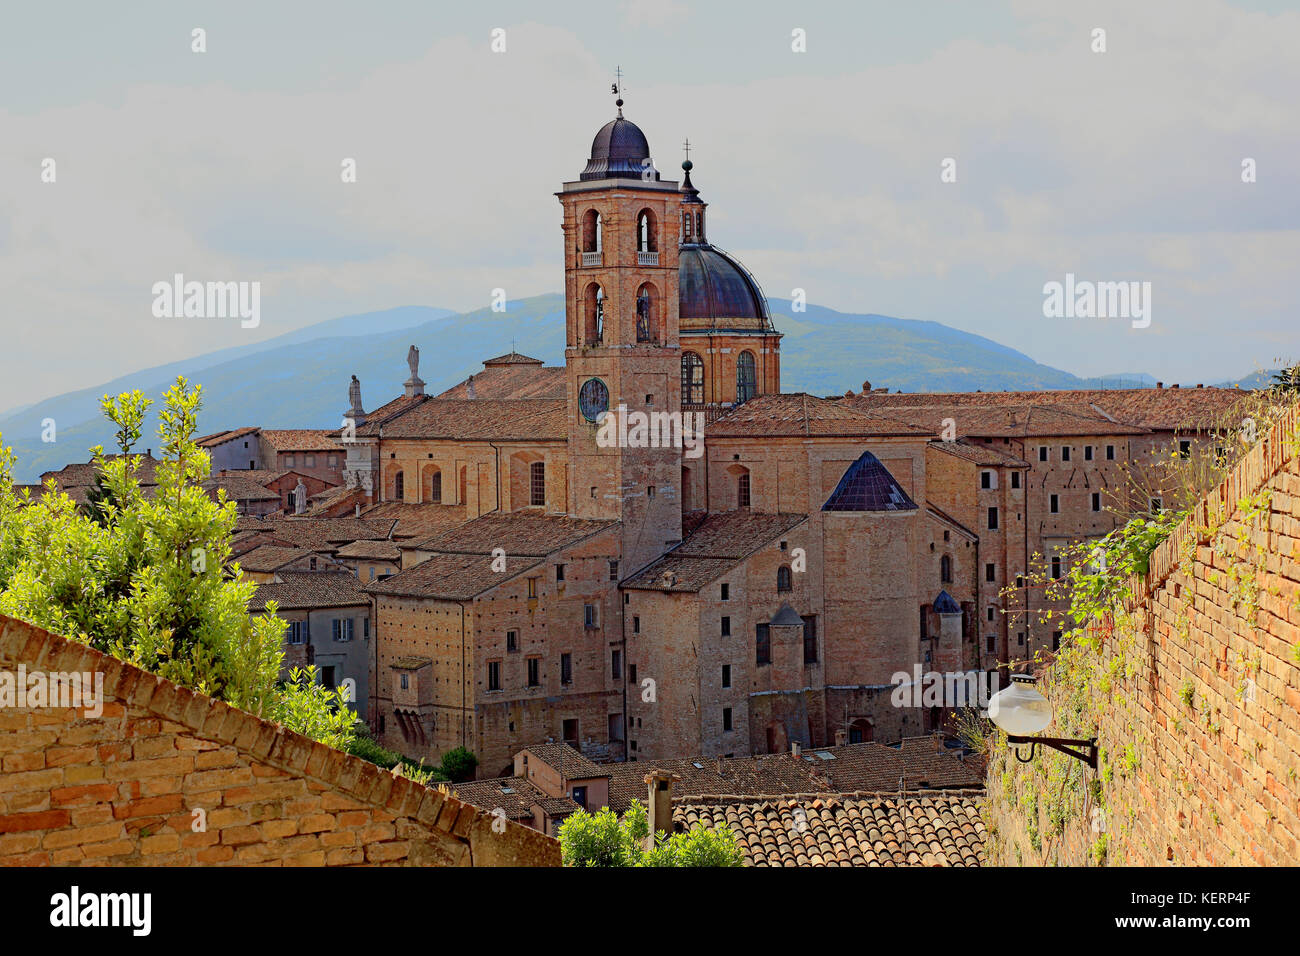 The Cathedral, Duomo di Urbino, Cattedrale Metropolitana di Santa Maria Assunta Duomo, Urbino, Marche, Italy Stock Photo